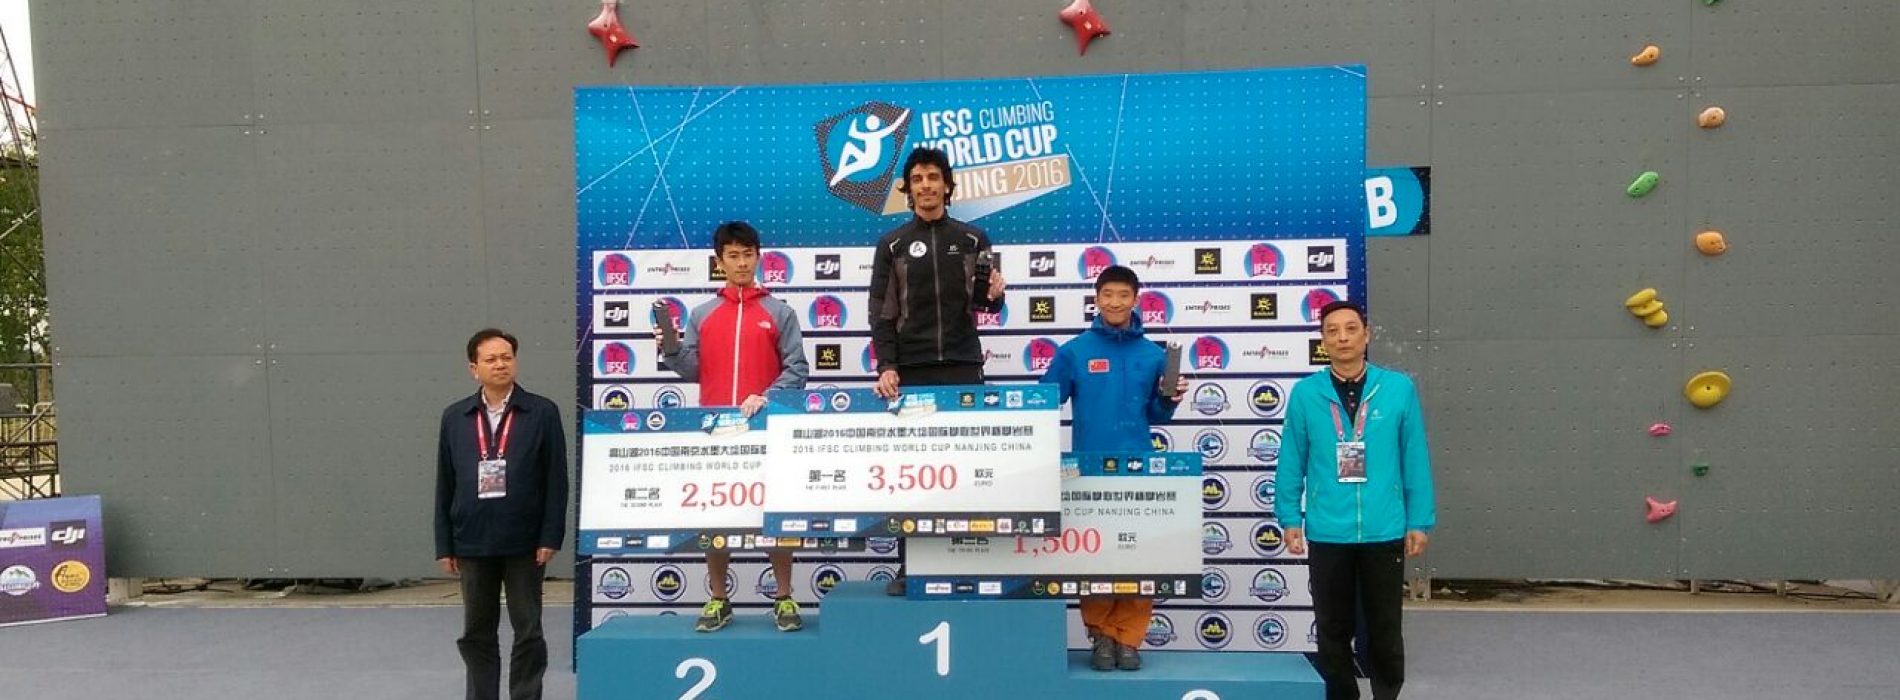 کسب مدال طلایی مسابقات مسترکاپ کشور چین توسط «علی براتزاده»